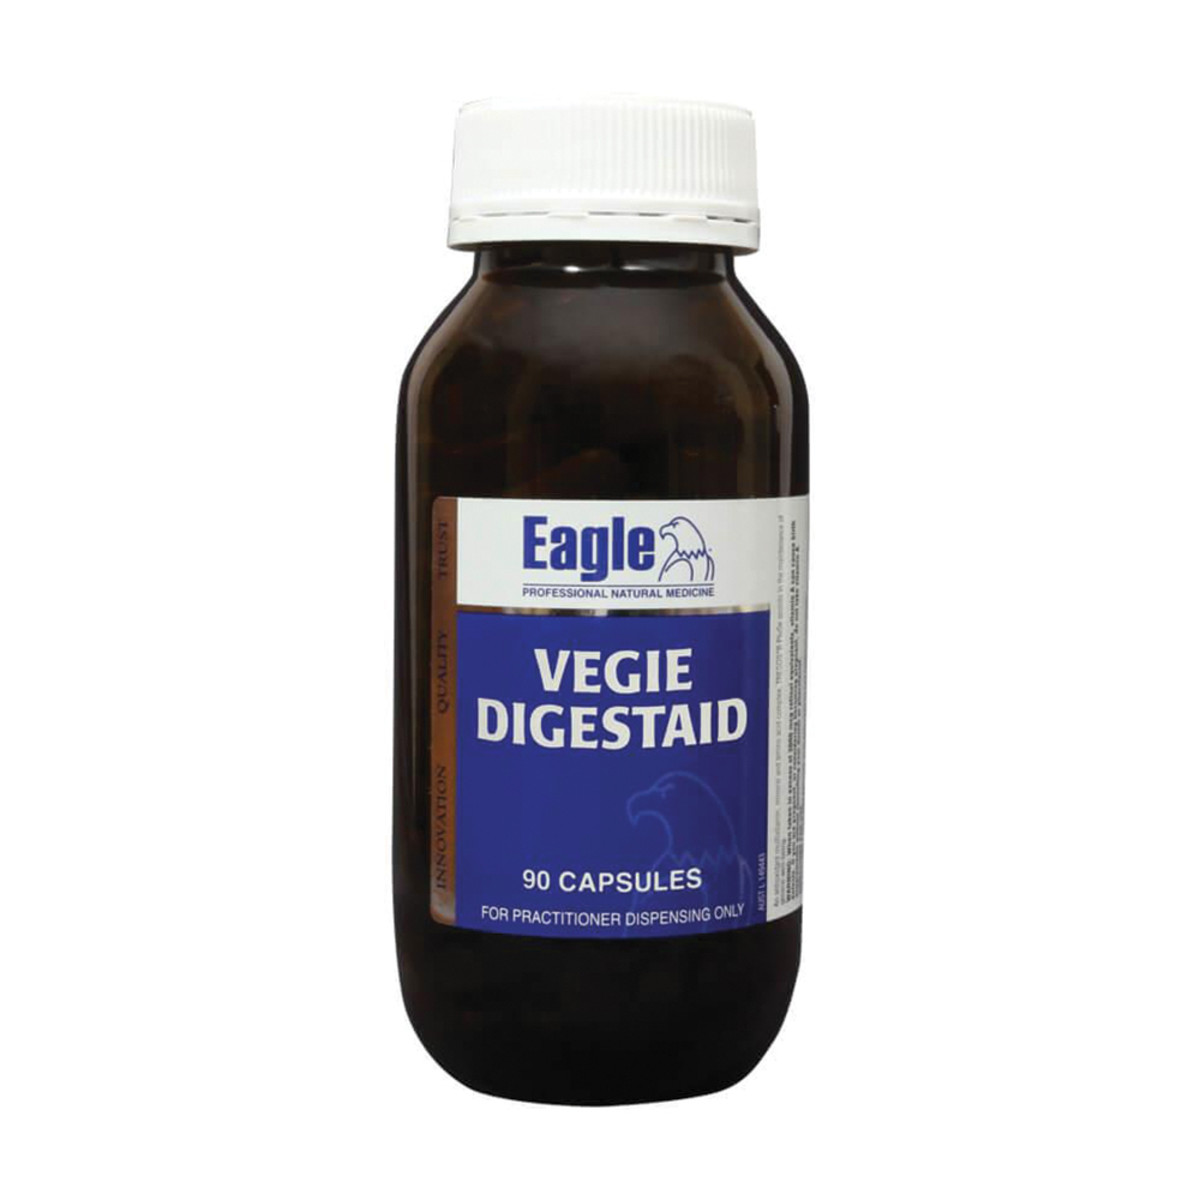 EAGLE - Vegie Digestaid